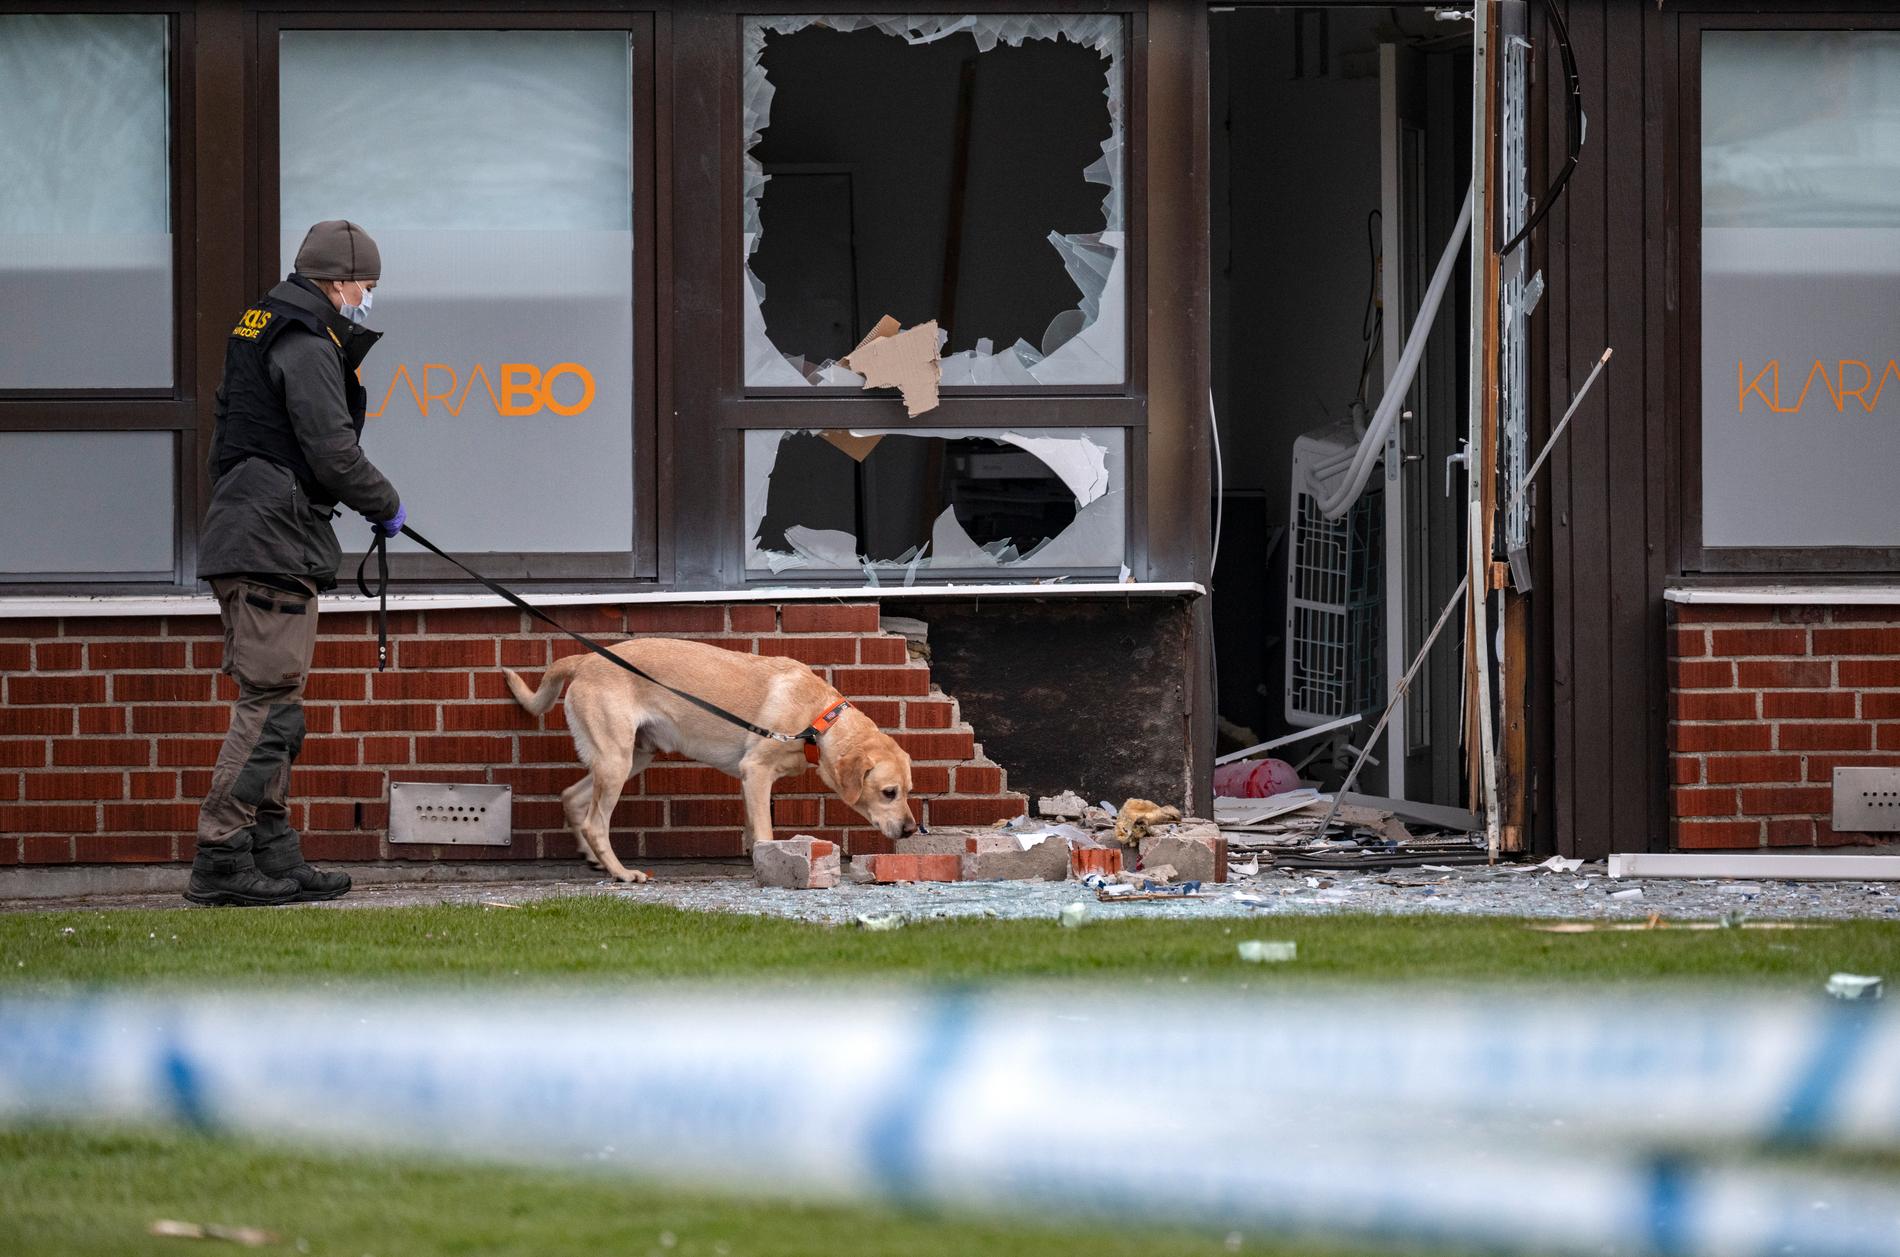 Polis arbetar med specialsökhund efter en explosion vid ett kontor i ett bostadsområde i Trelleborg i mitten av april. Arkivbild.